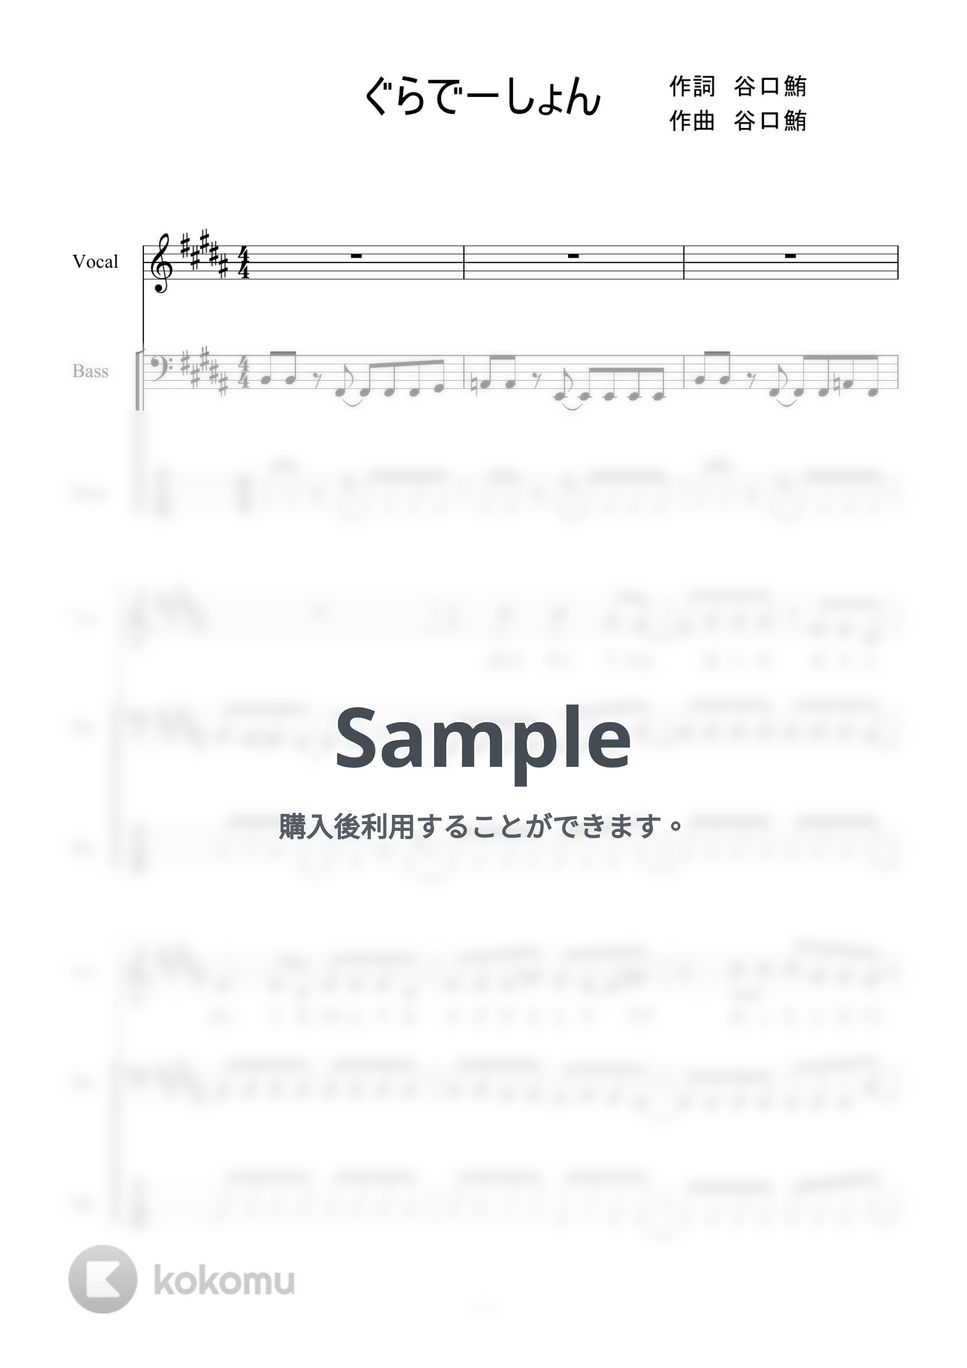 KANA-BOON - ぐらでーしょん (ベース) by 二次元楽譜製作所